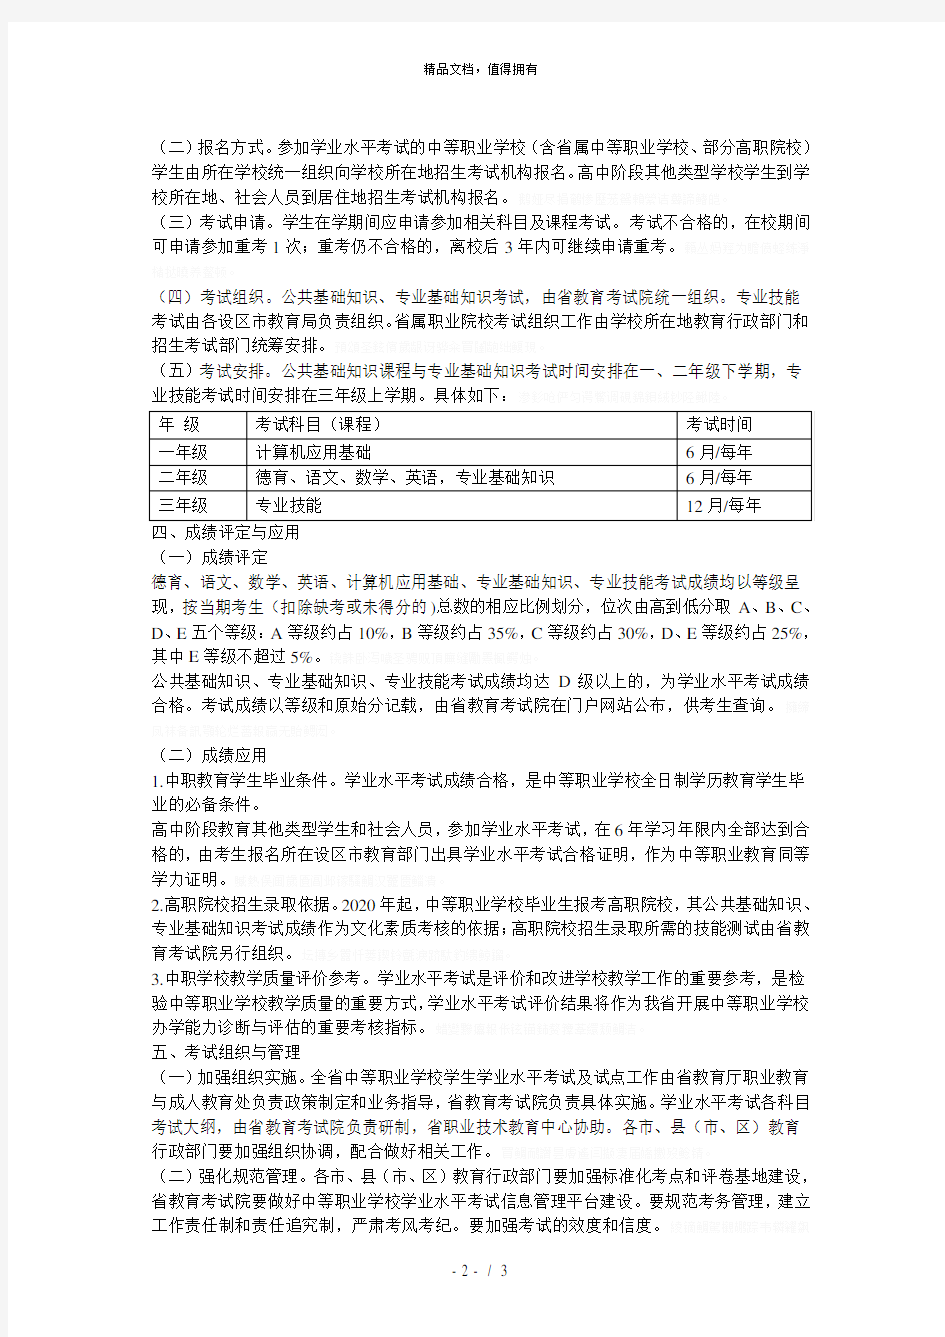 (完整版)福建省中等职业学校学生学业水平考试